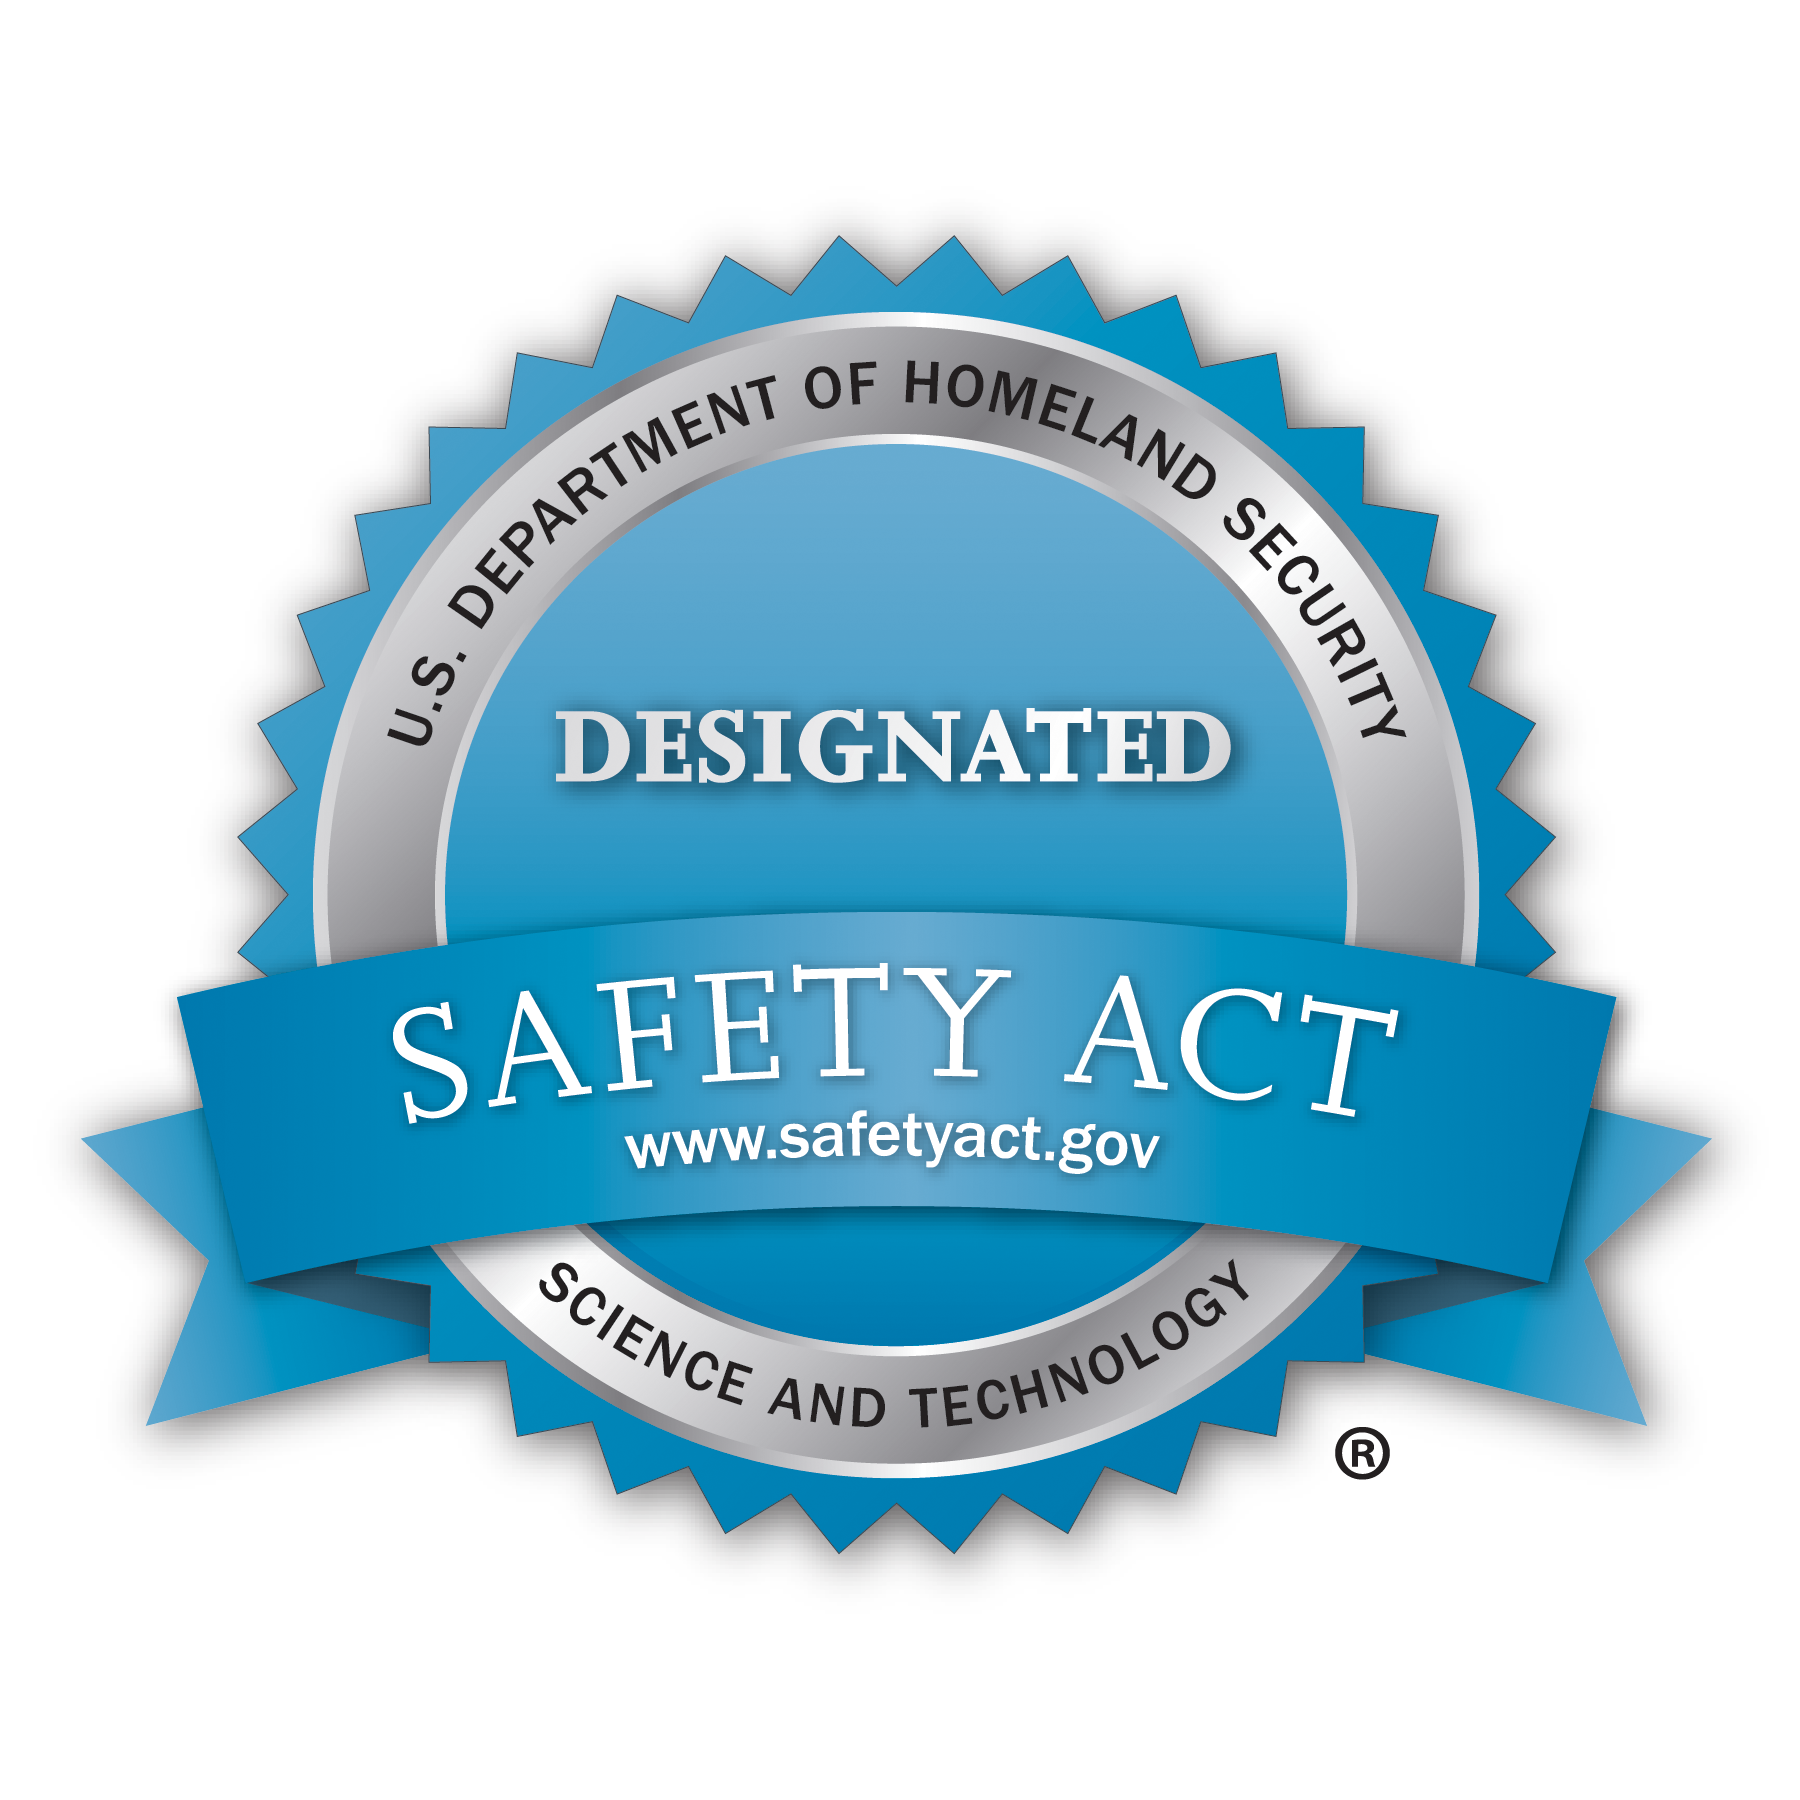 TSC Advantage awarded SAFETY Act Designation